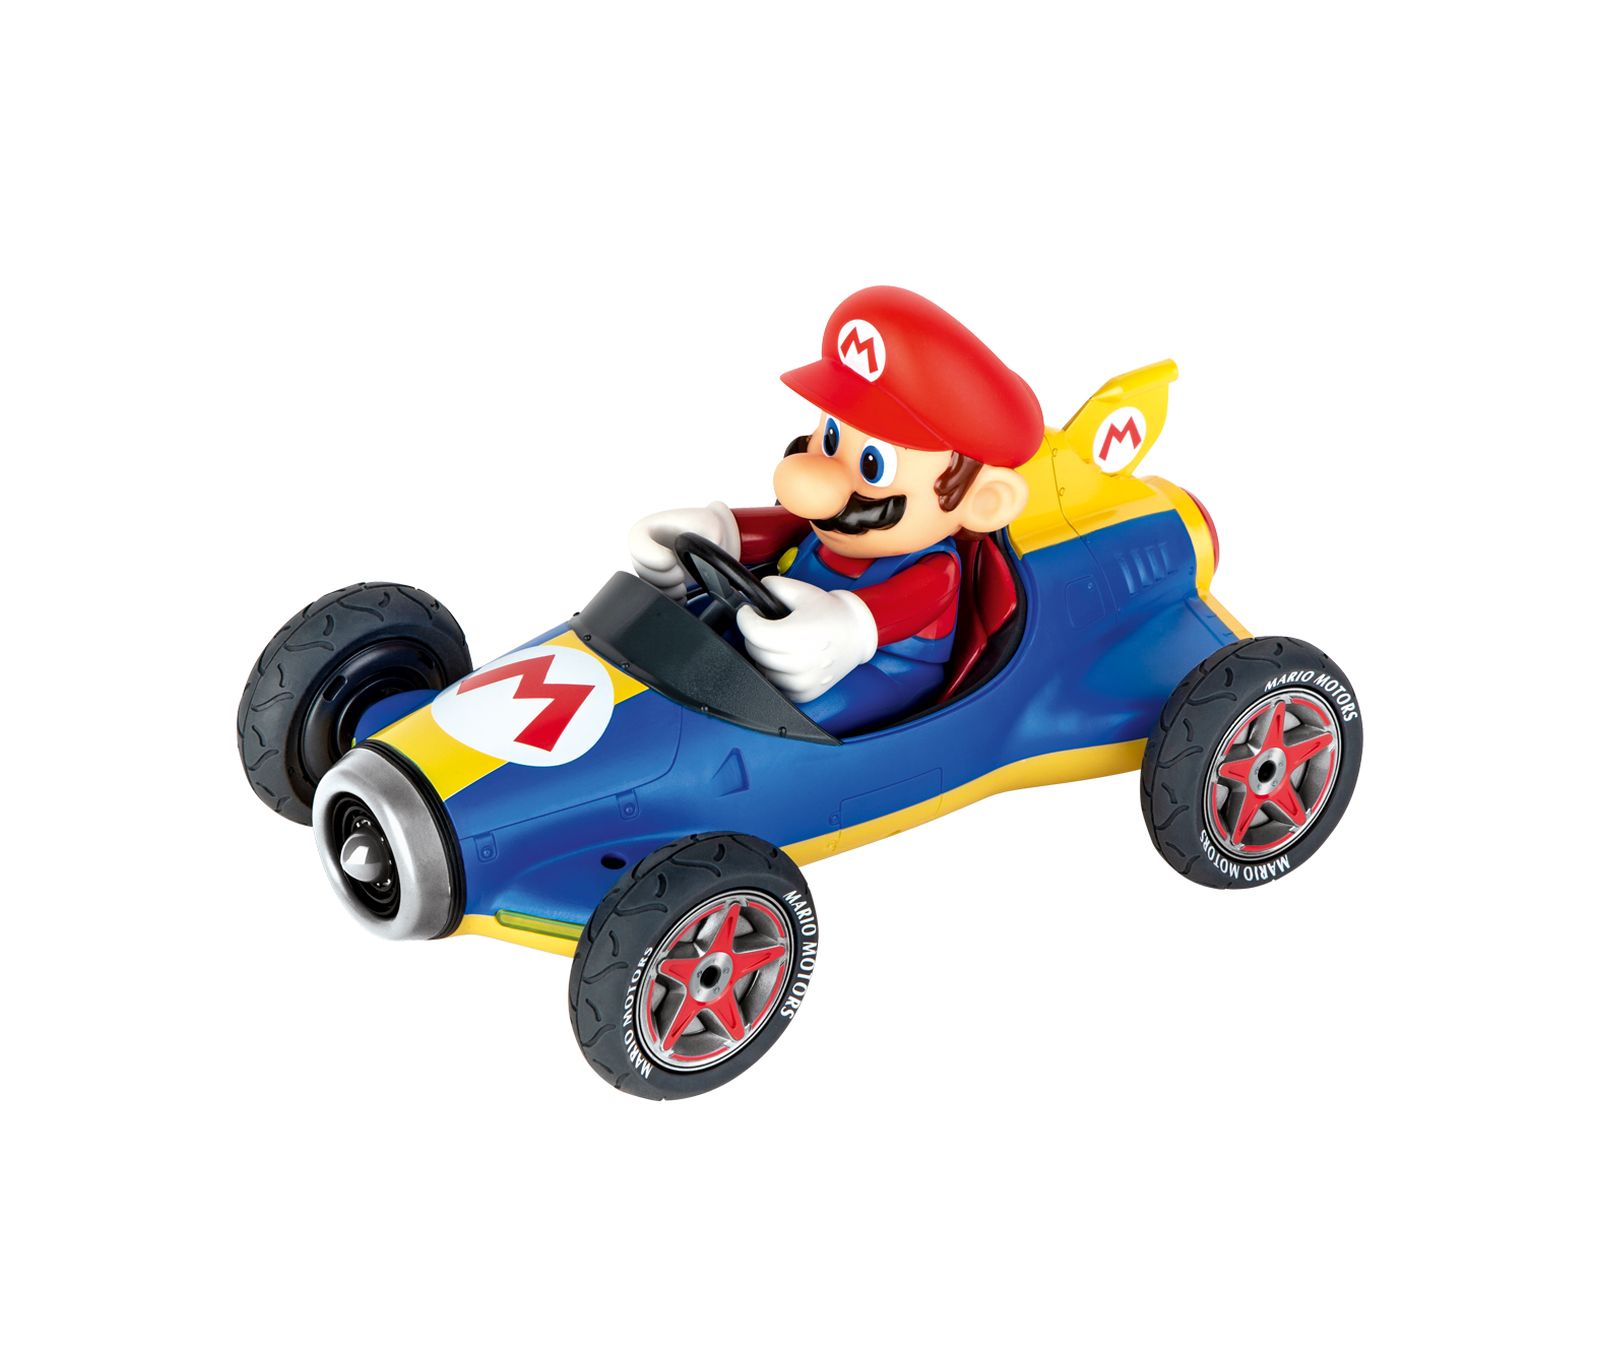 Mario kart mach 8 rc - CARRERA, Super Mario